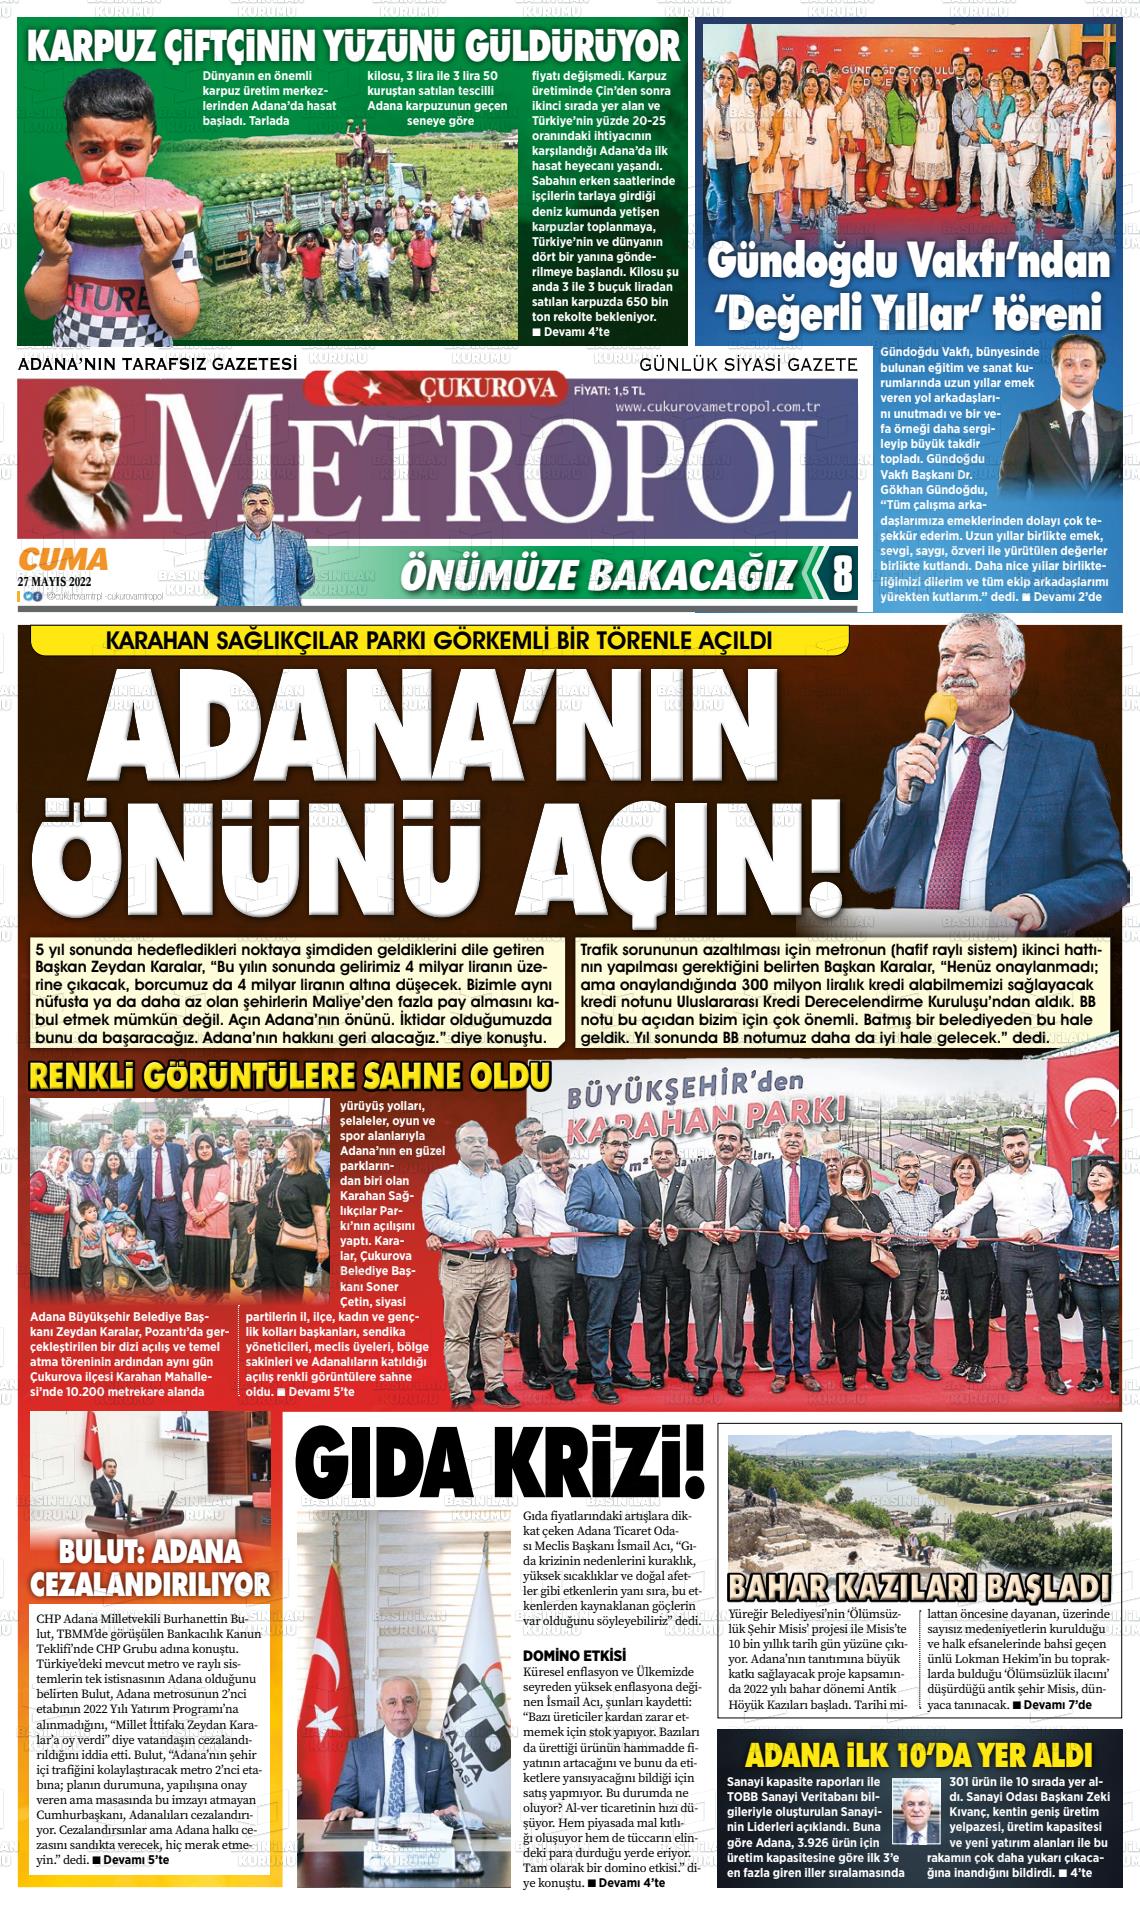 27 Mayıs 2022 Çukurova Metropol Gazete Manşeti